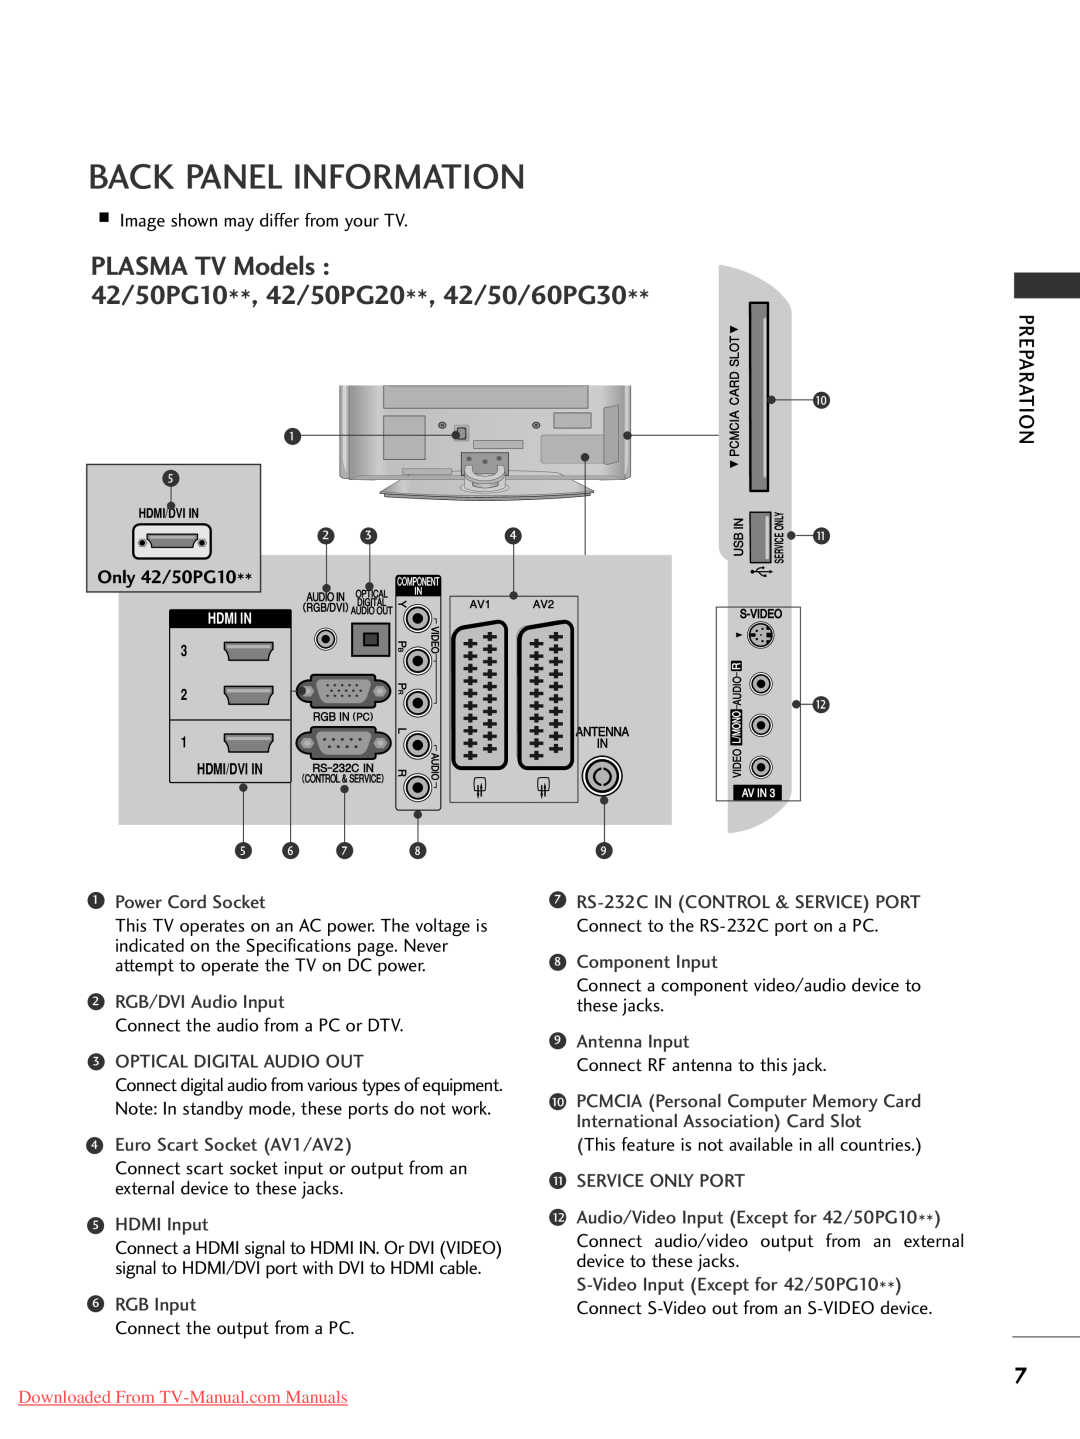 LG Electronics 4 47 7L LG G5 50 Back Panel Information, PLASMA TV Models 42/50PG10**, 42/50PG20**, 42/50/60PG30 